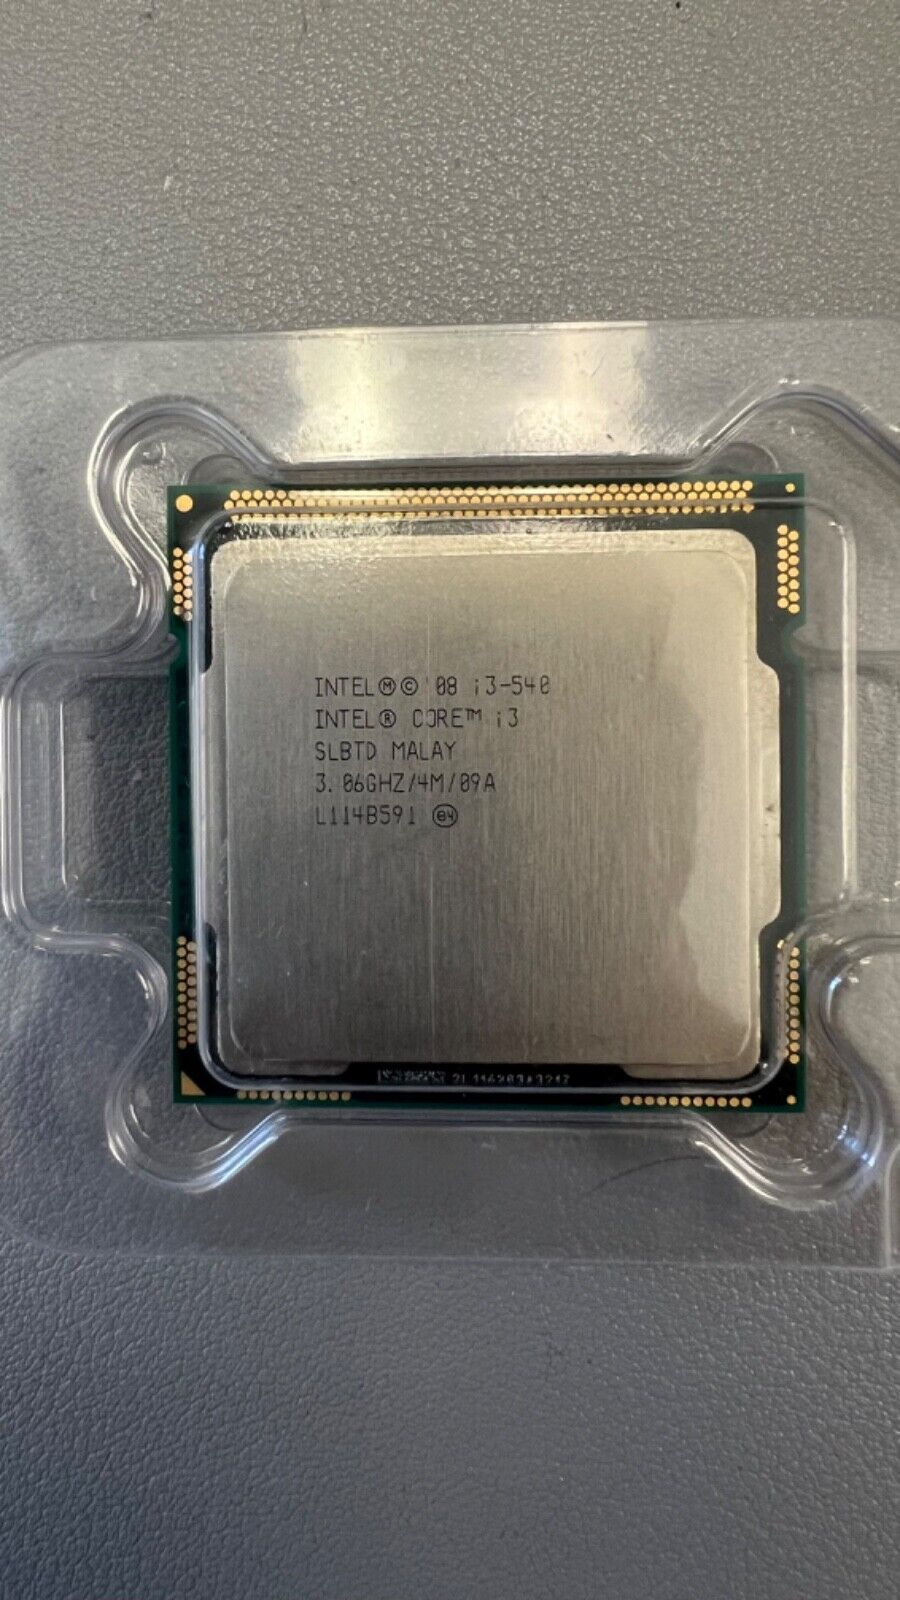 Intel Core i3-540 3.06GHz Dual-Core Processor